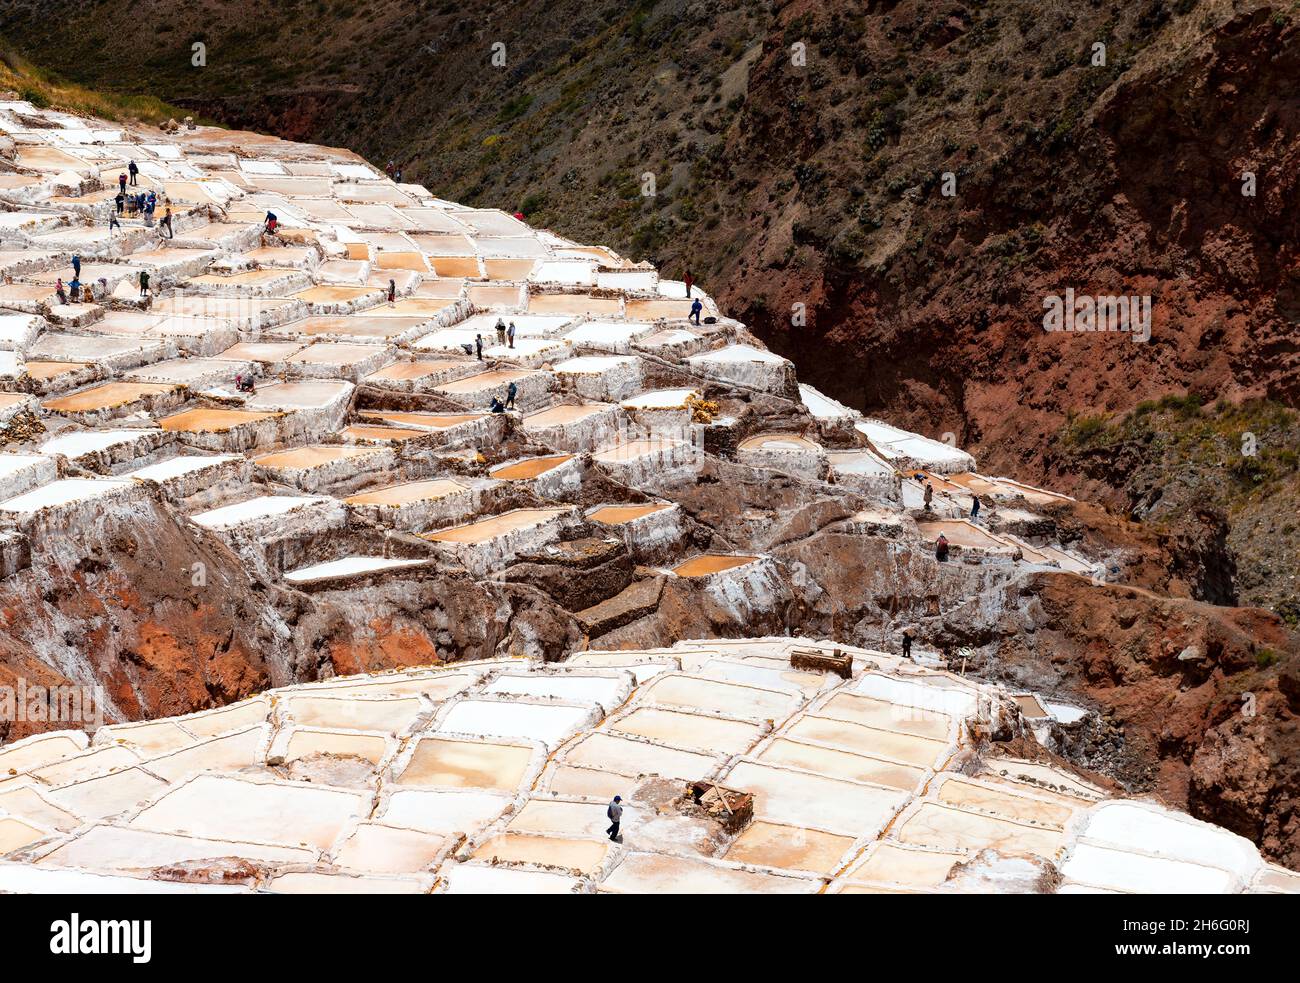 Maras sale terrazze con silhouette di Peruvian Quechua popolazioni indigene che fanno la raccolta del sale, Maras distretto, provincia Cusco, Perù. Foto Stock